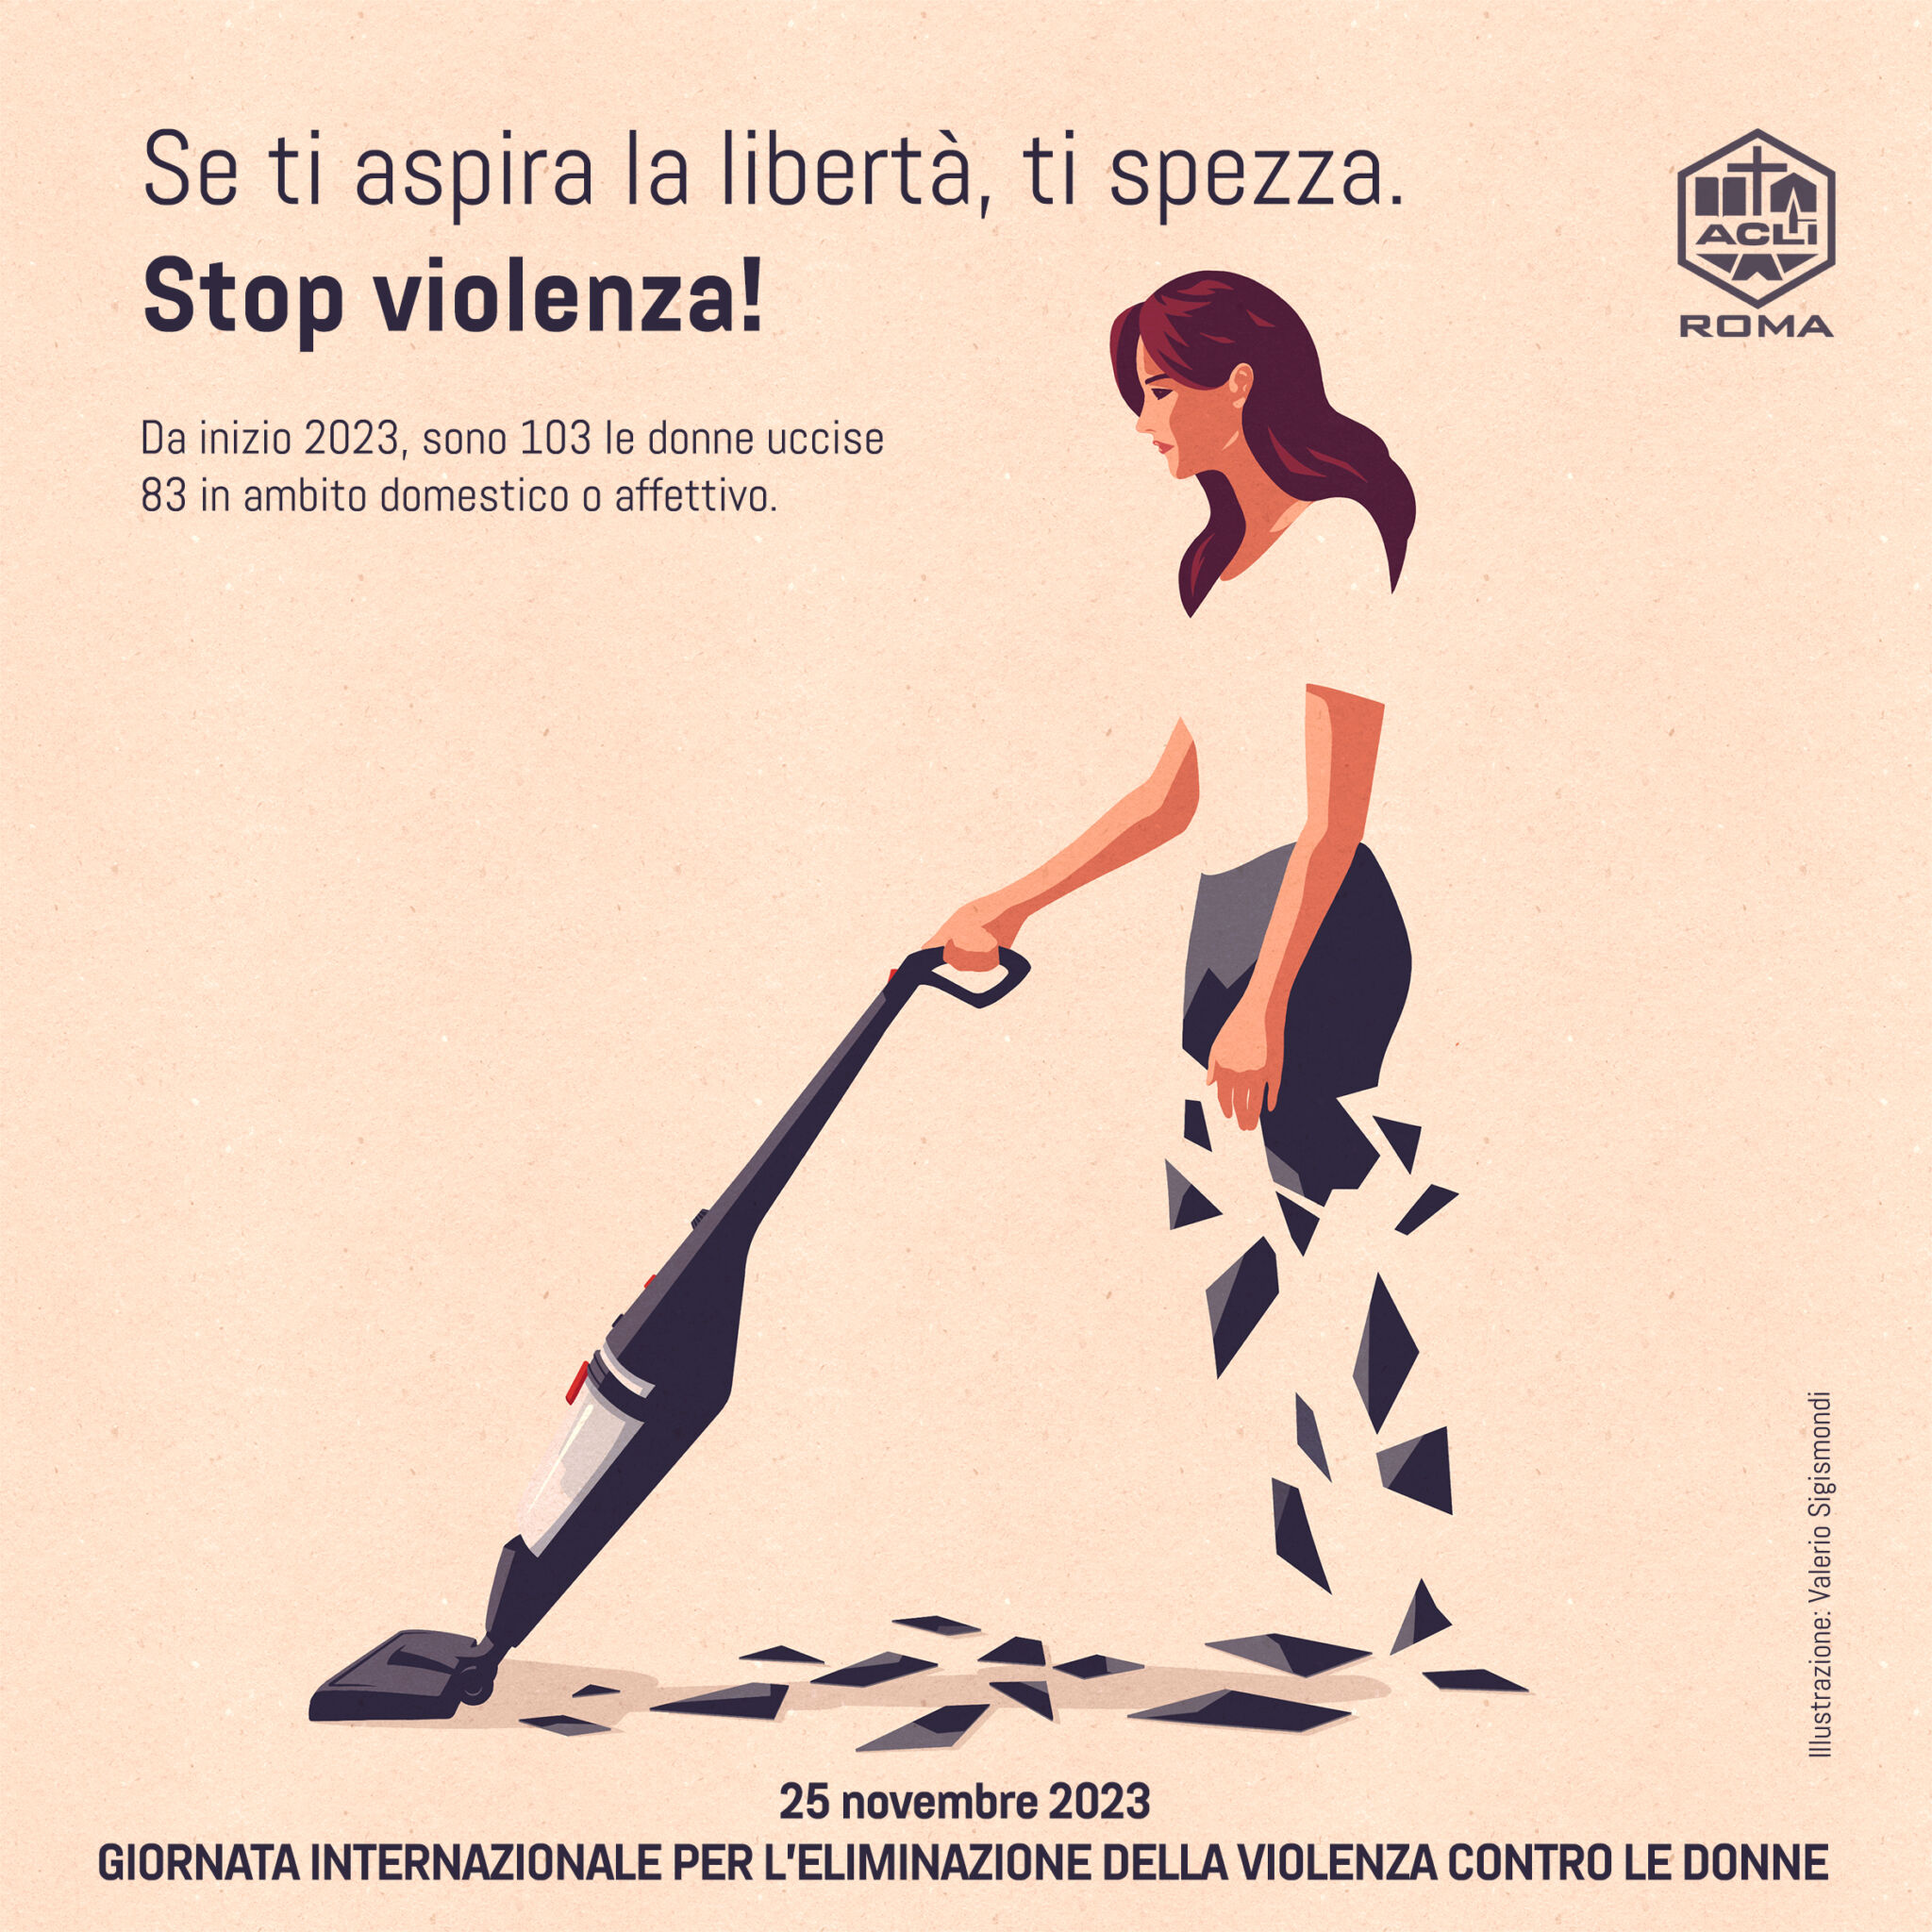 Giornata contro la violenza sulle donne; alleanza tra uomini e donne per una rivoluzione culturale. L’appello delle ACLI di Roma